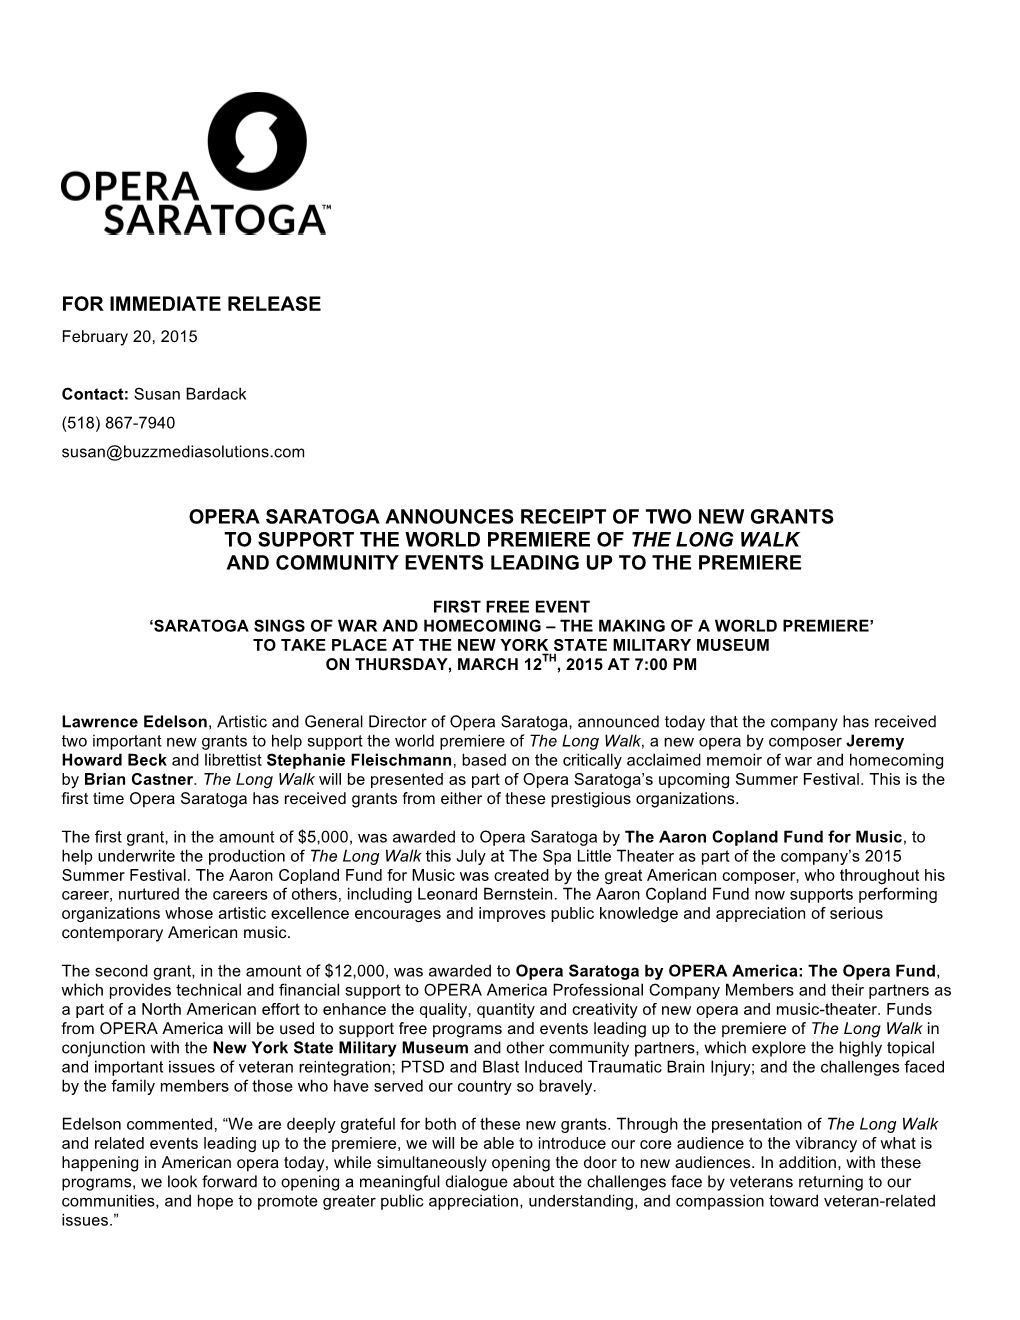 For Immediate Release Opera Saratoga Announces